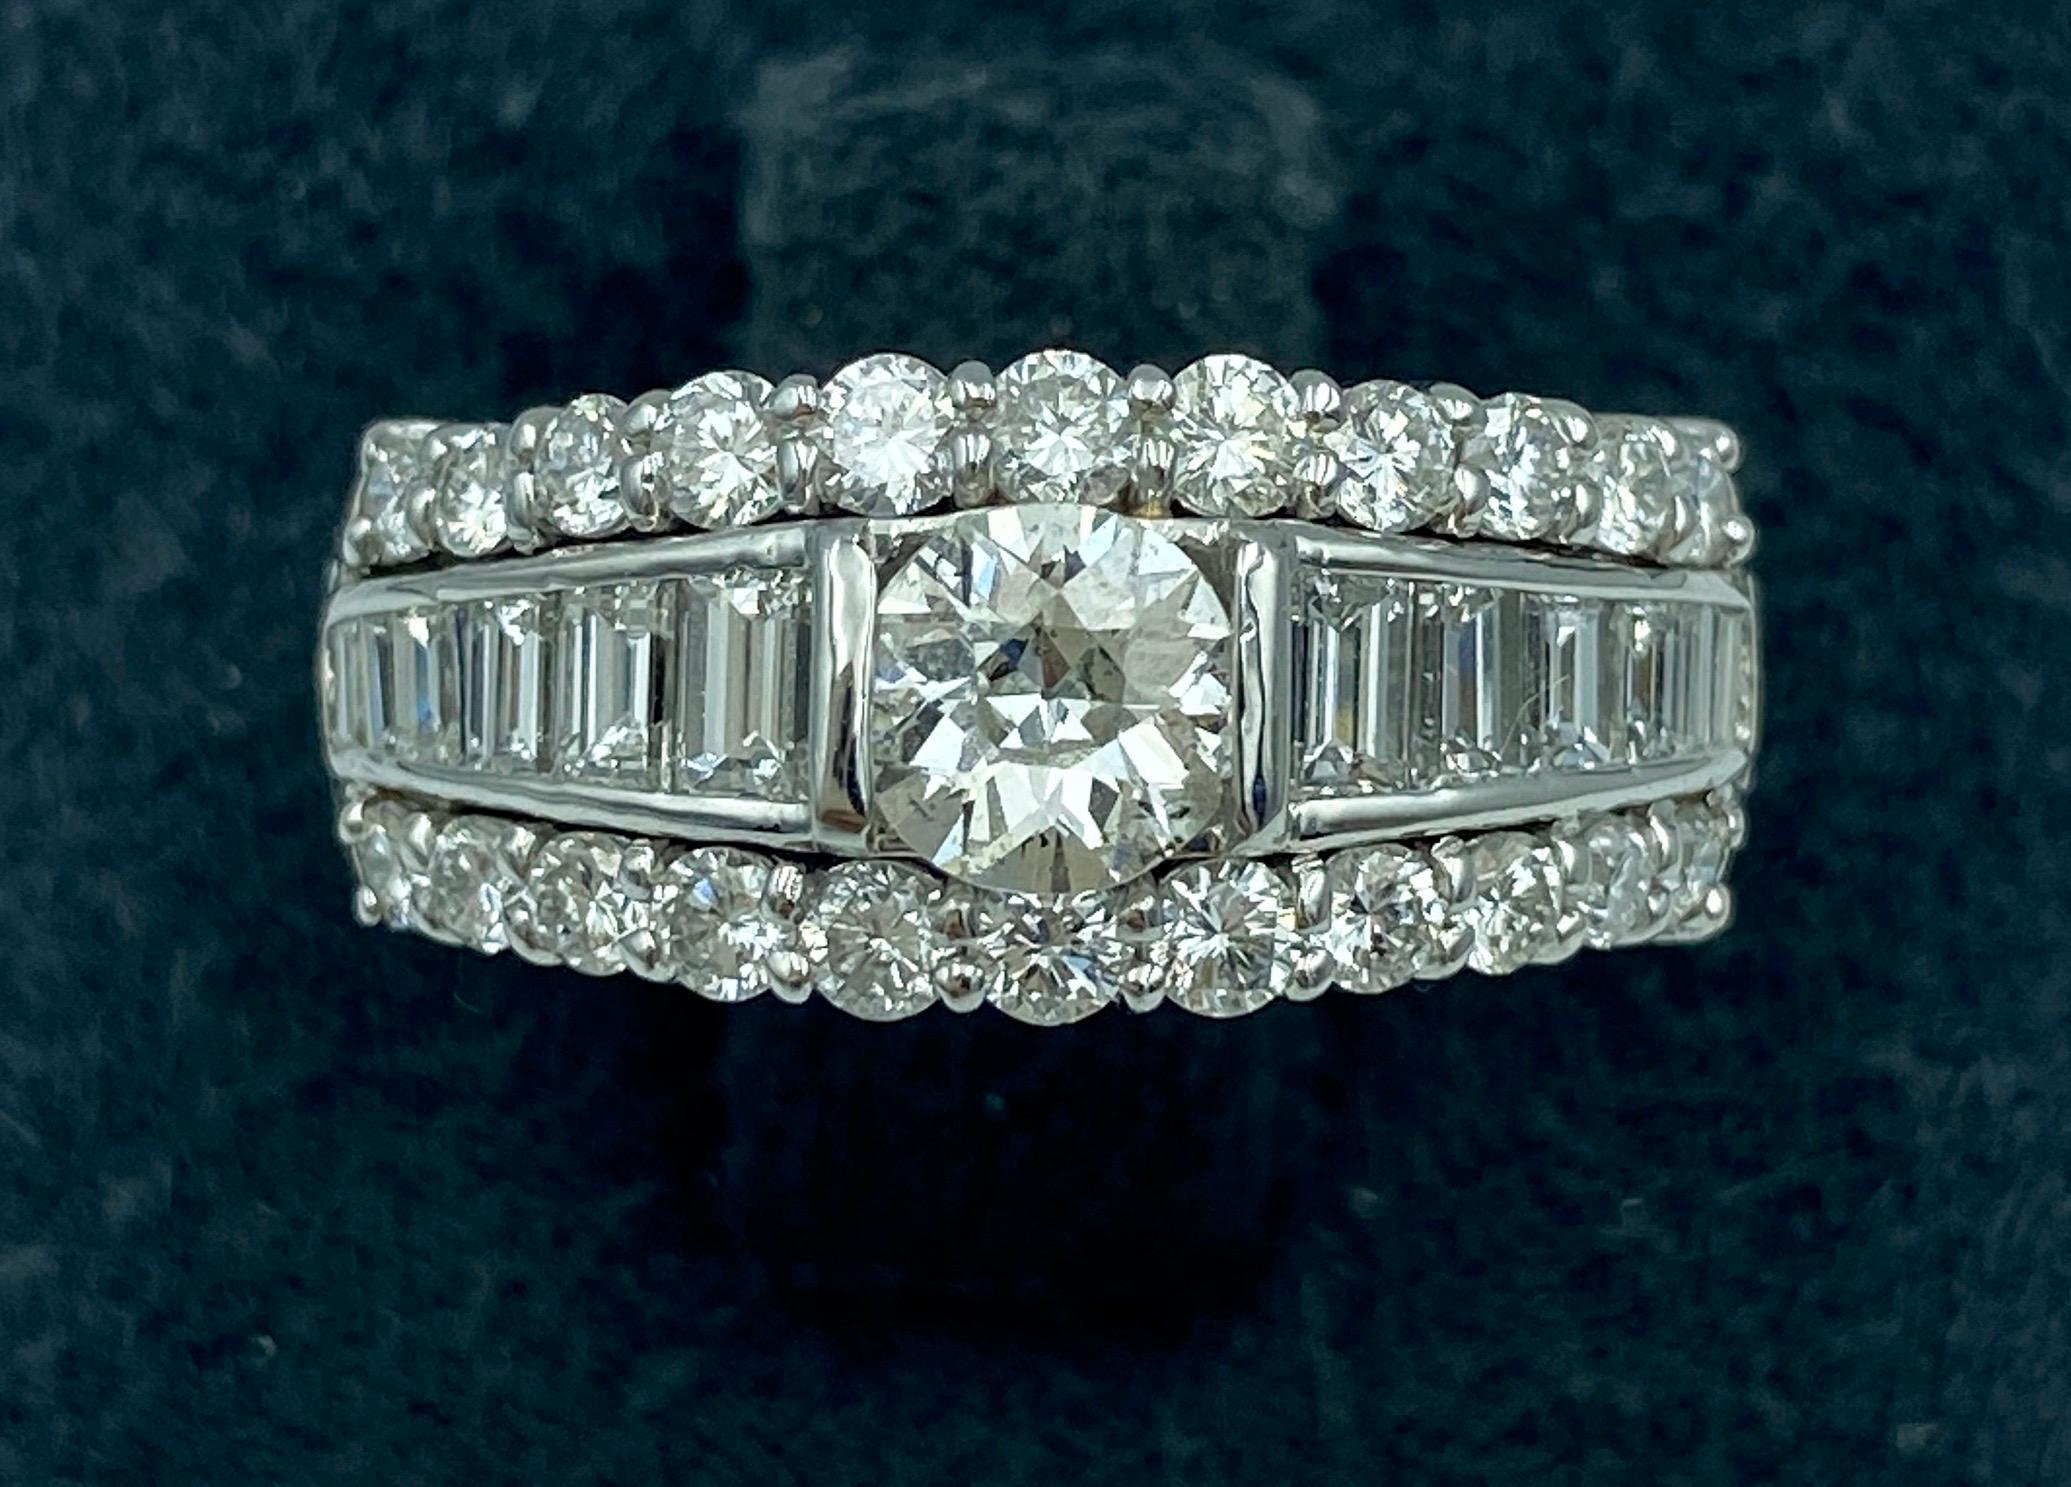 Dieser wunderschöne Verlobungsring aus Platin und Diamanten aus den 1970er Jahren hat einen Mittelstein von 0,54 Karat und insgesamt 1,33 Karat an Diamanten. Die Diamanten haben die Reinheit VVS und die Farbe F-G. Die Qualität der Diamanten zusammen